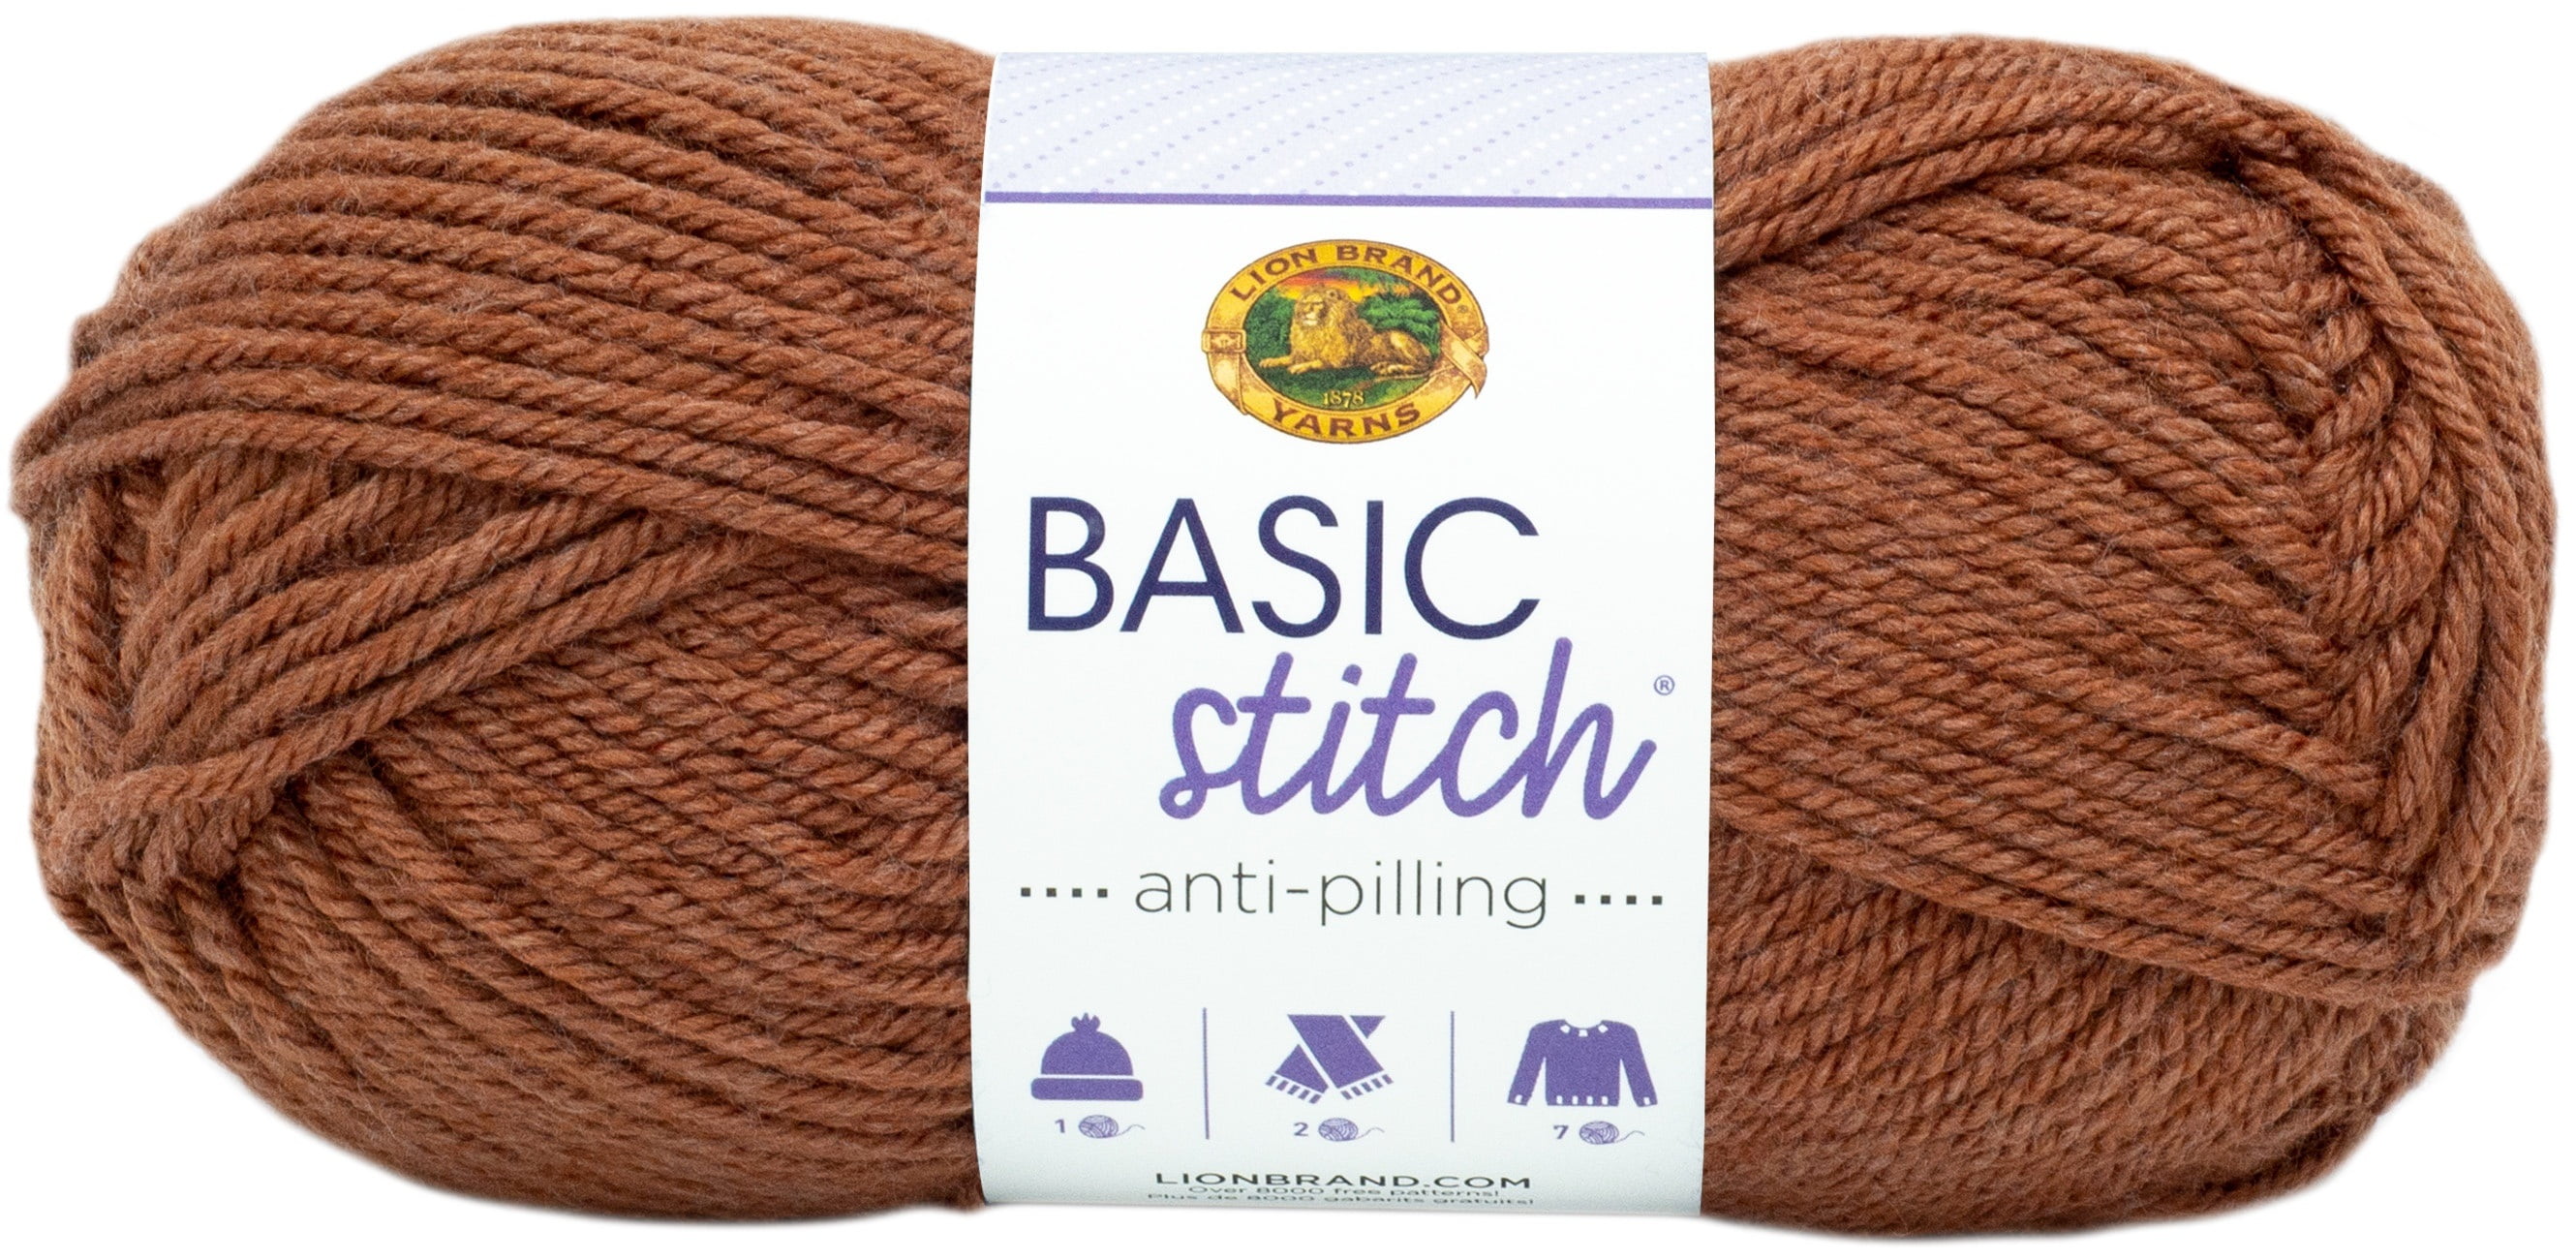 Lion Brand Basic Stitch Anti-Pilling Yarn-Pine Heather